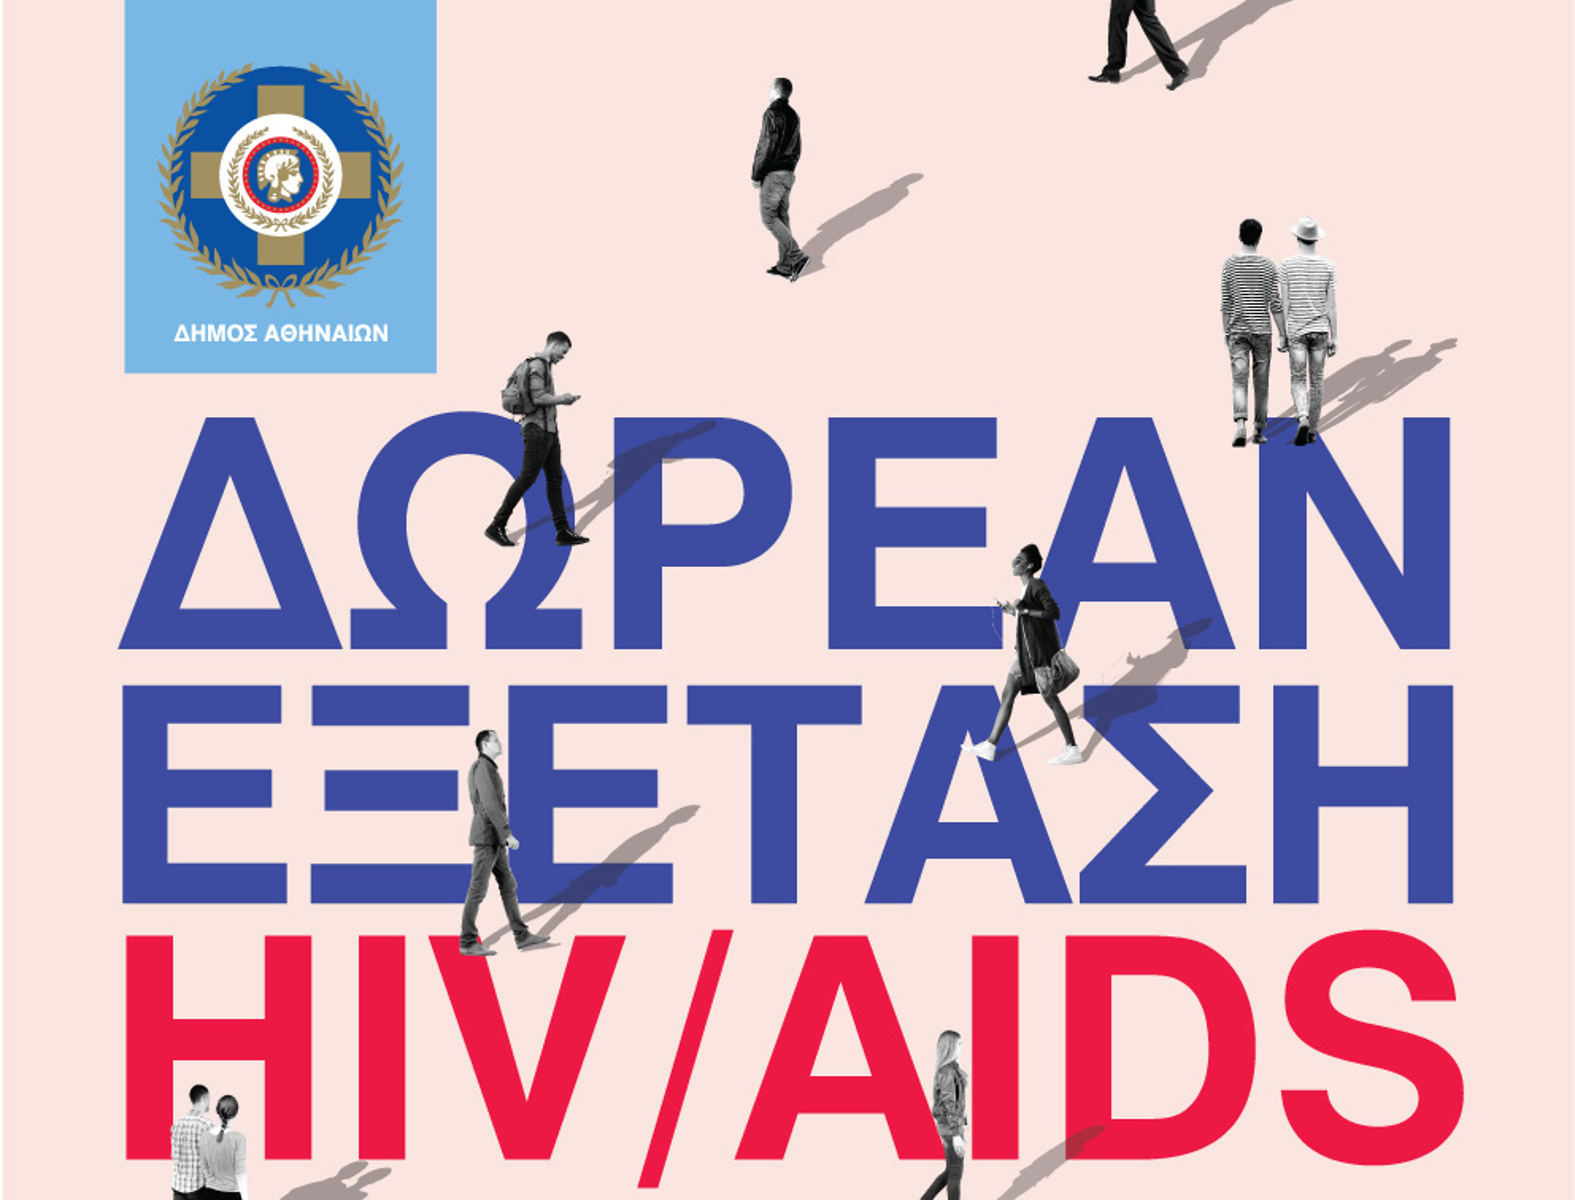 Δωρεάν εξετάσεις HIV από τον Δήμο Αθηναίων